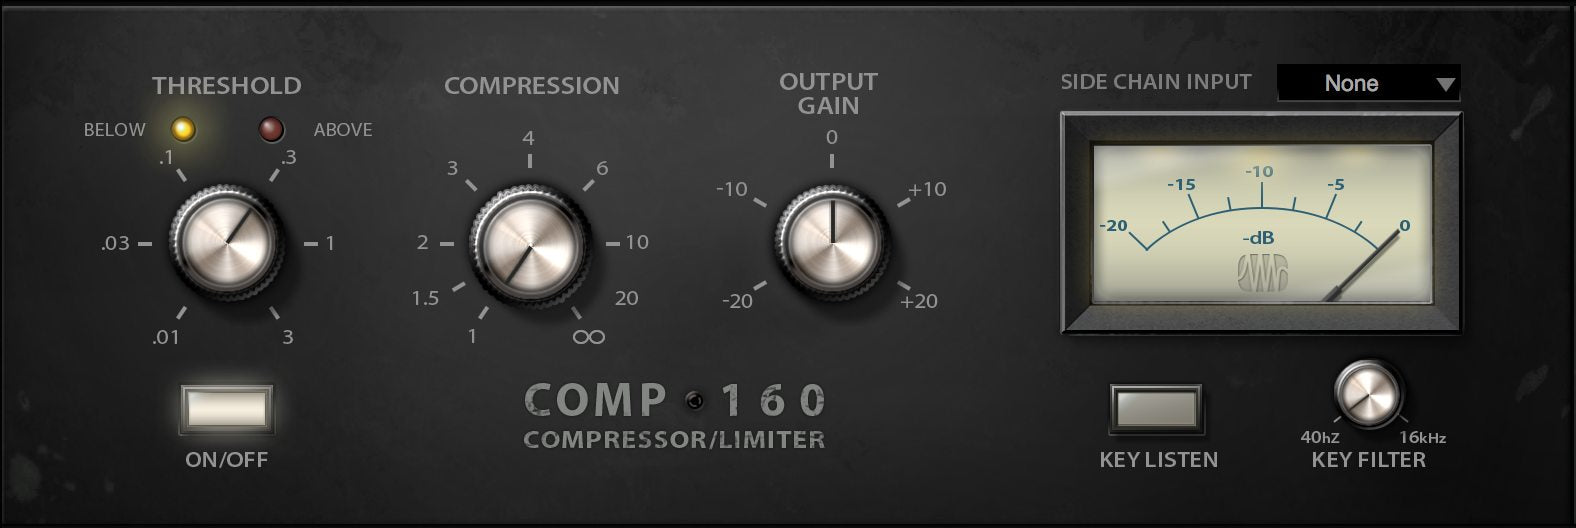 Presonus Comp 160 Compressor - Fat Channel Plug-in